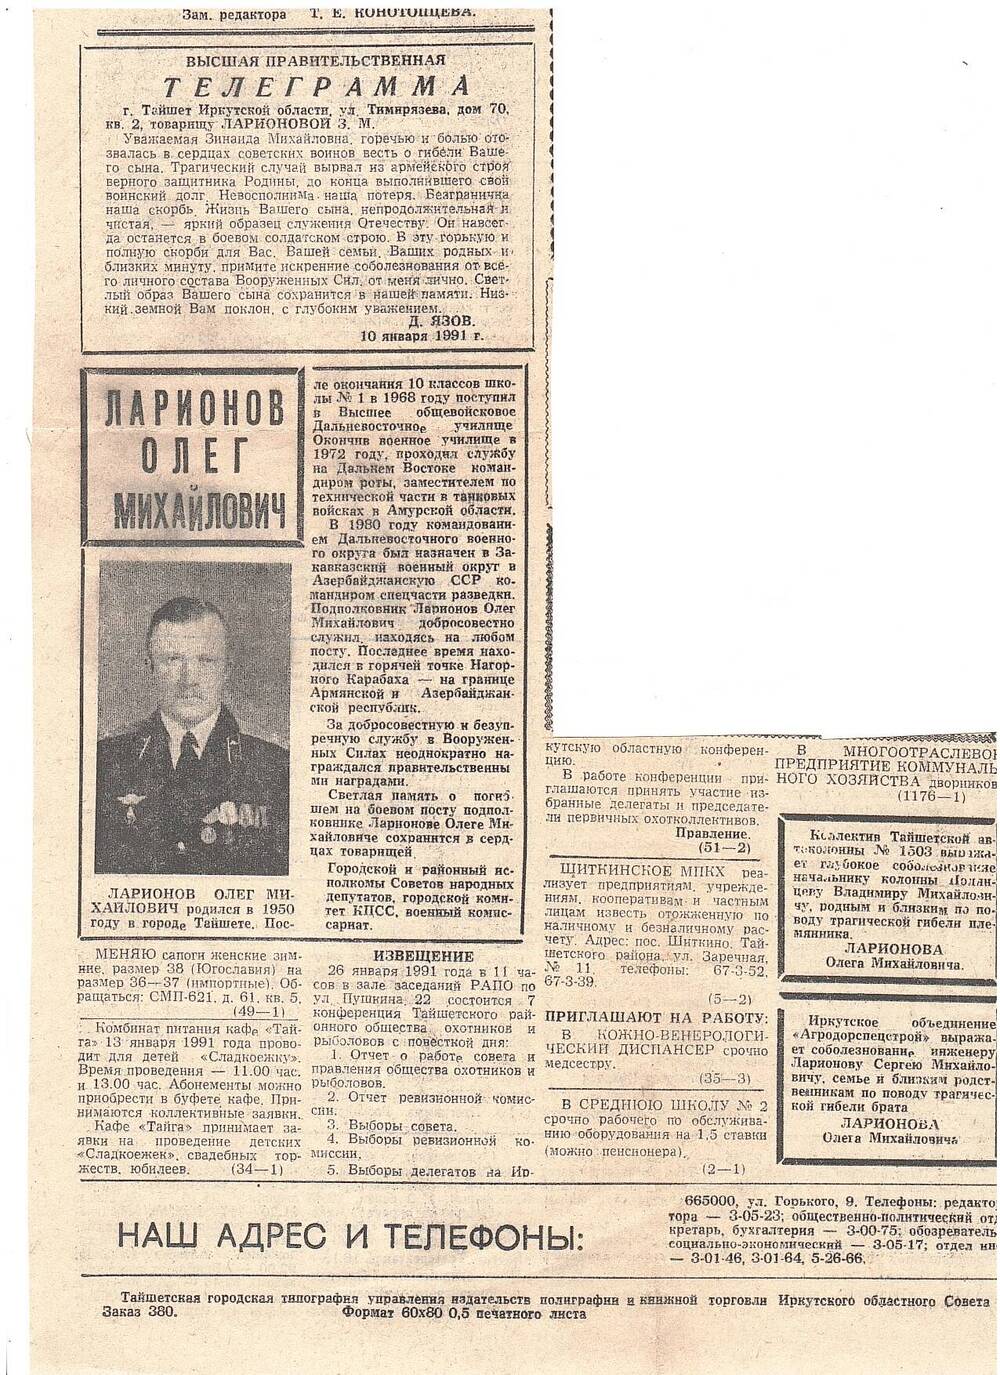 Вырезка из газеты Бирюсинская новь с сообщением о гибели Ларионова О. М.